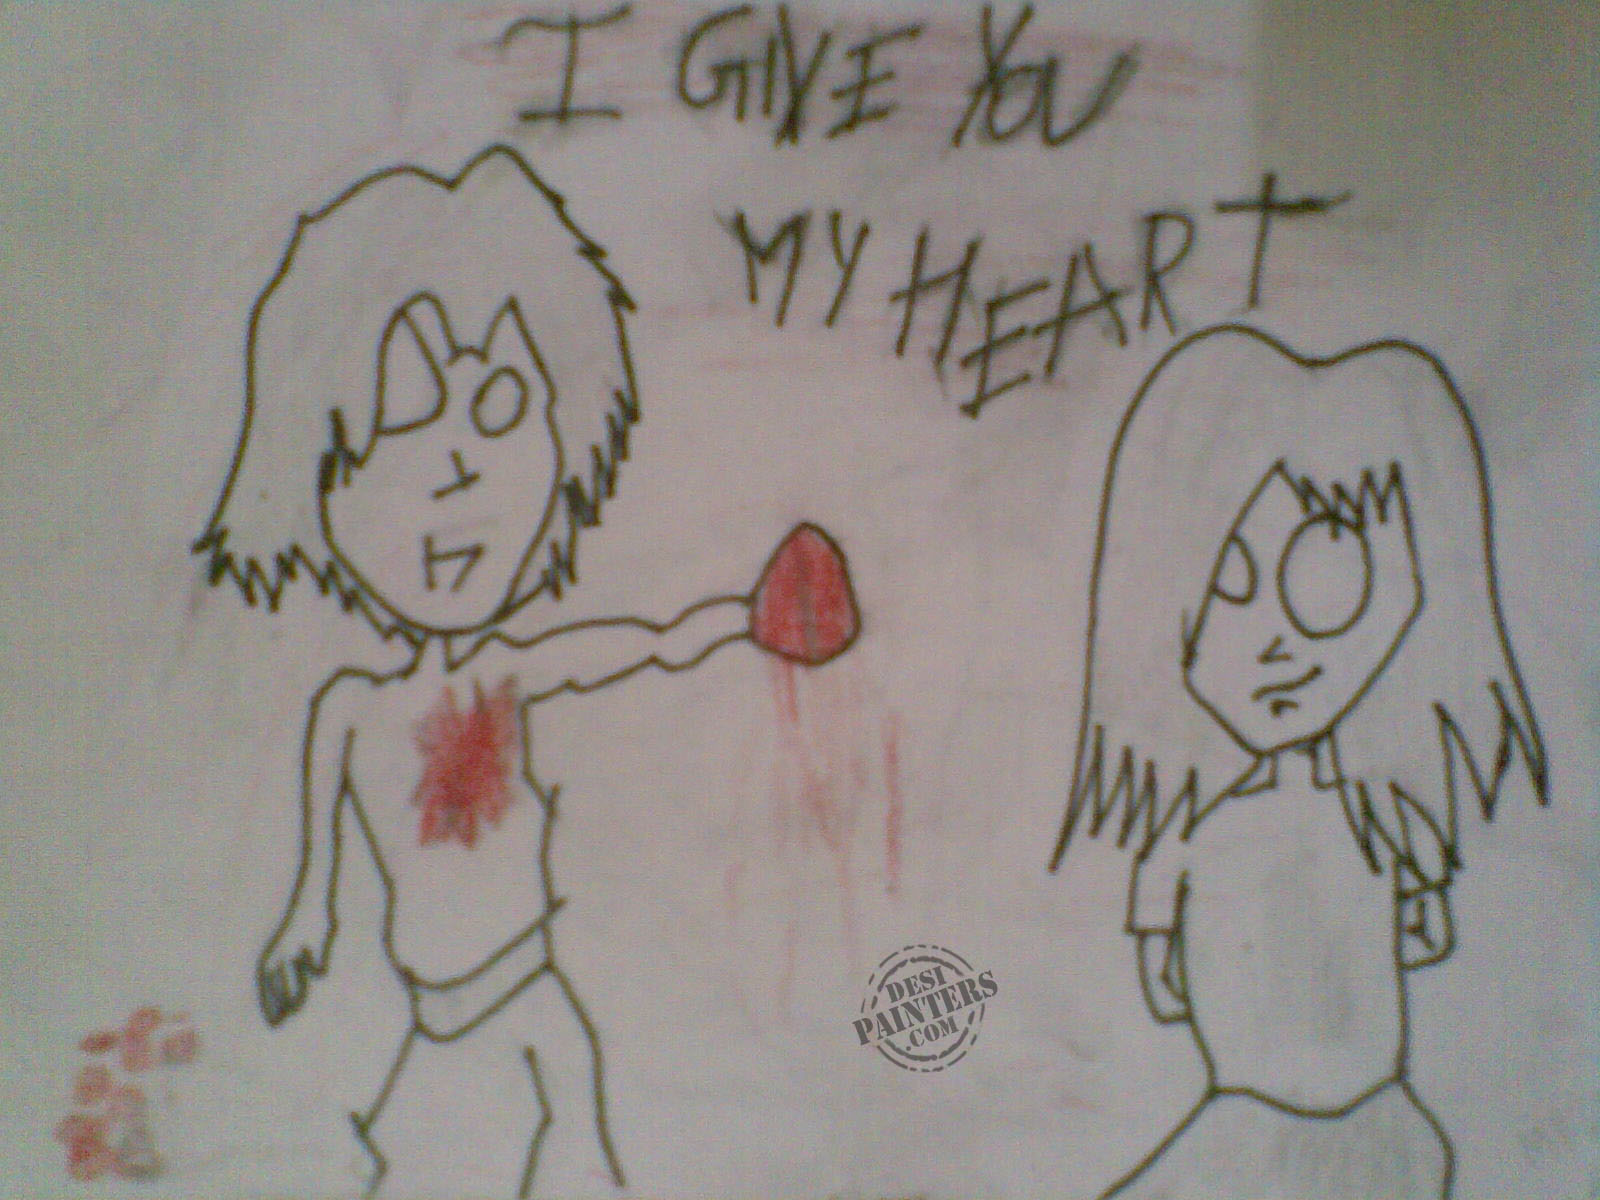 I Give U My Heart | DesiPainters.com